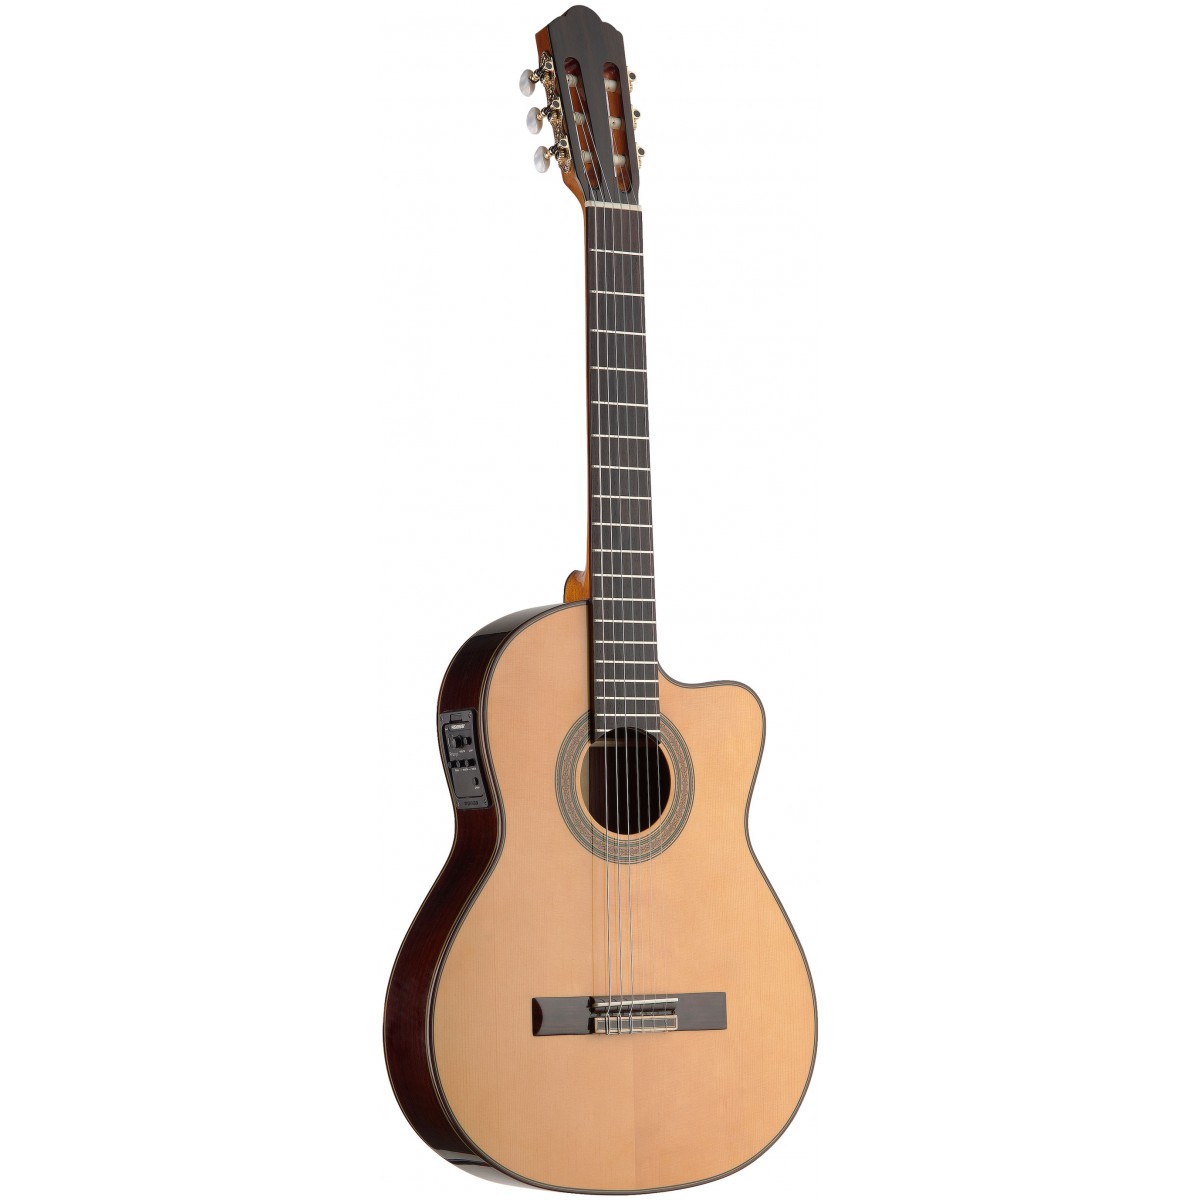 Angel Lopez C1448TCFI-S 4/4 elektro-akustická kytara